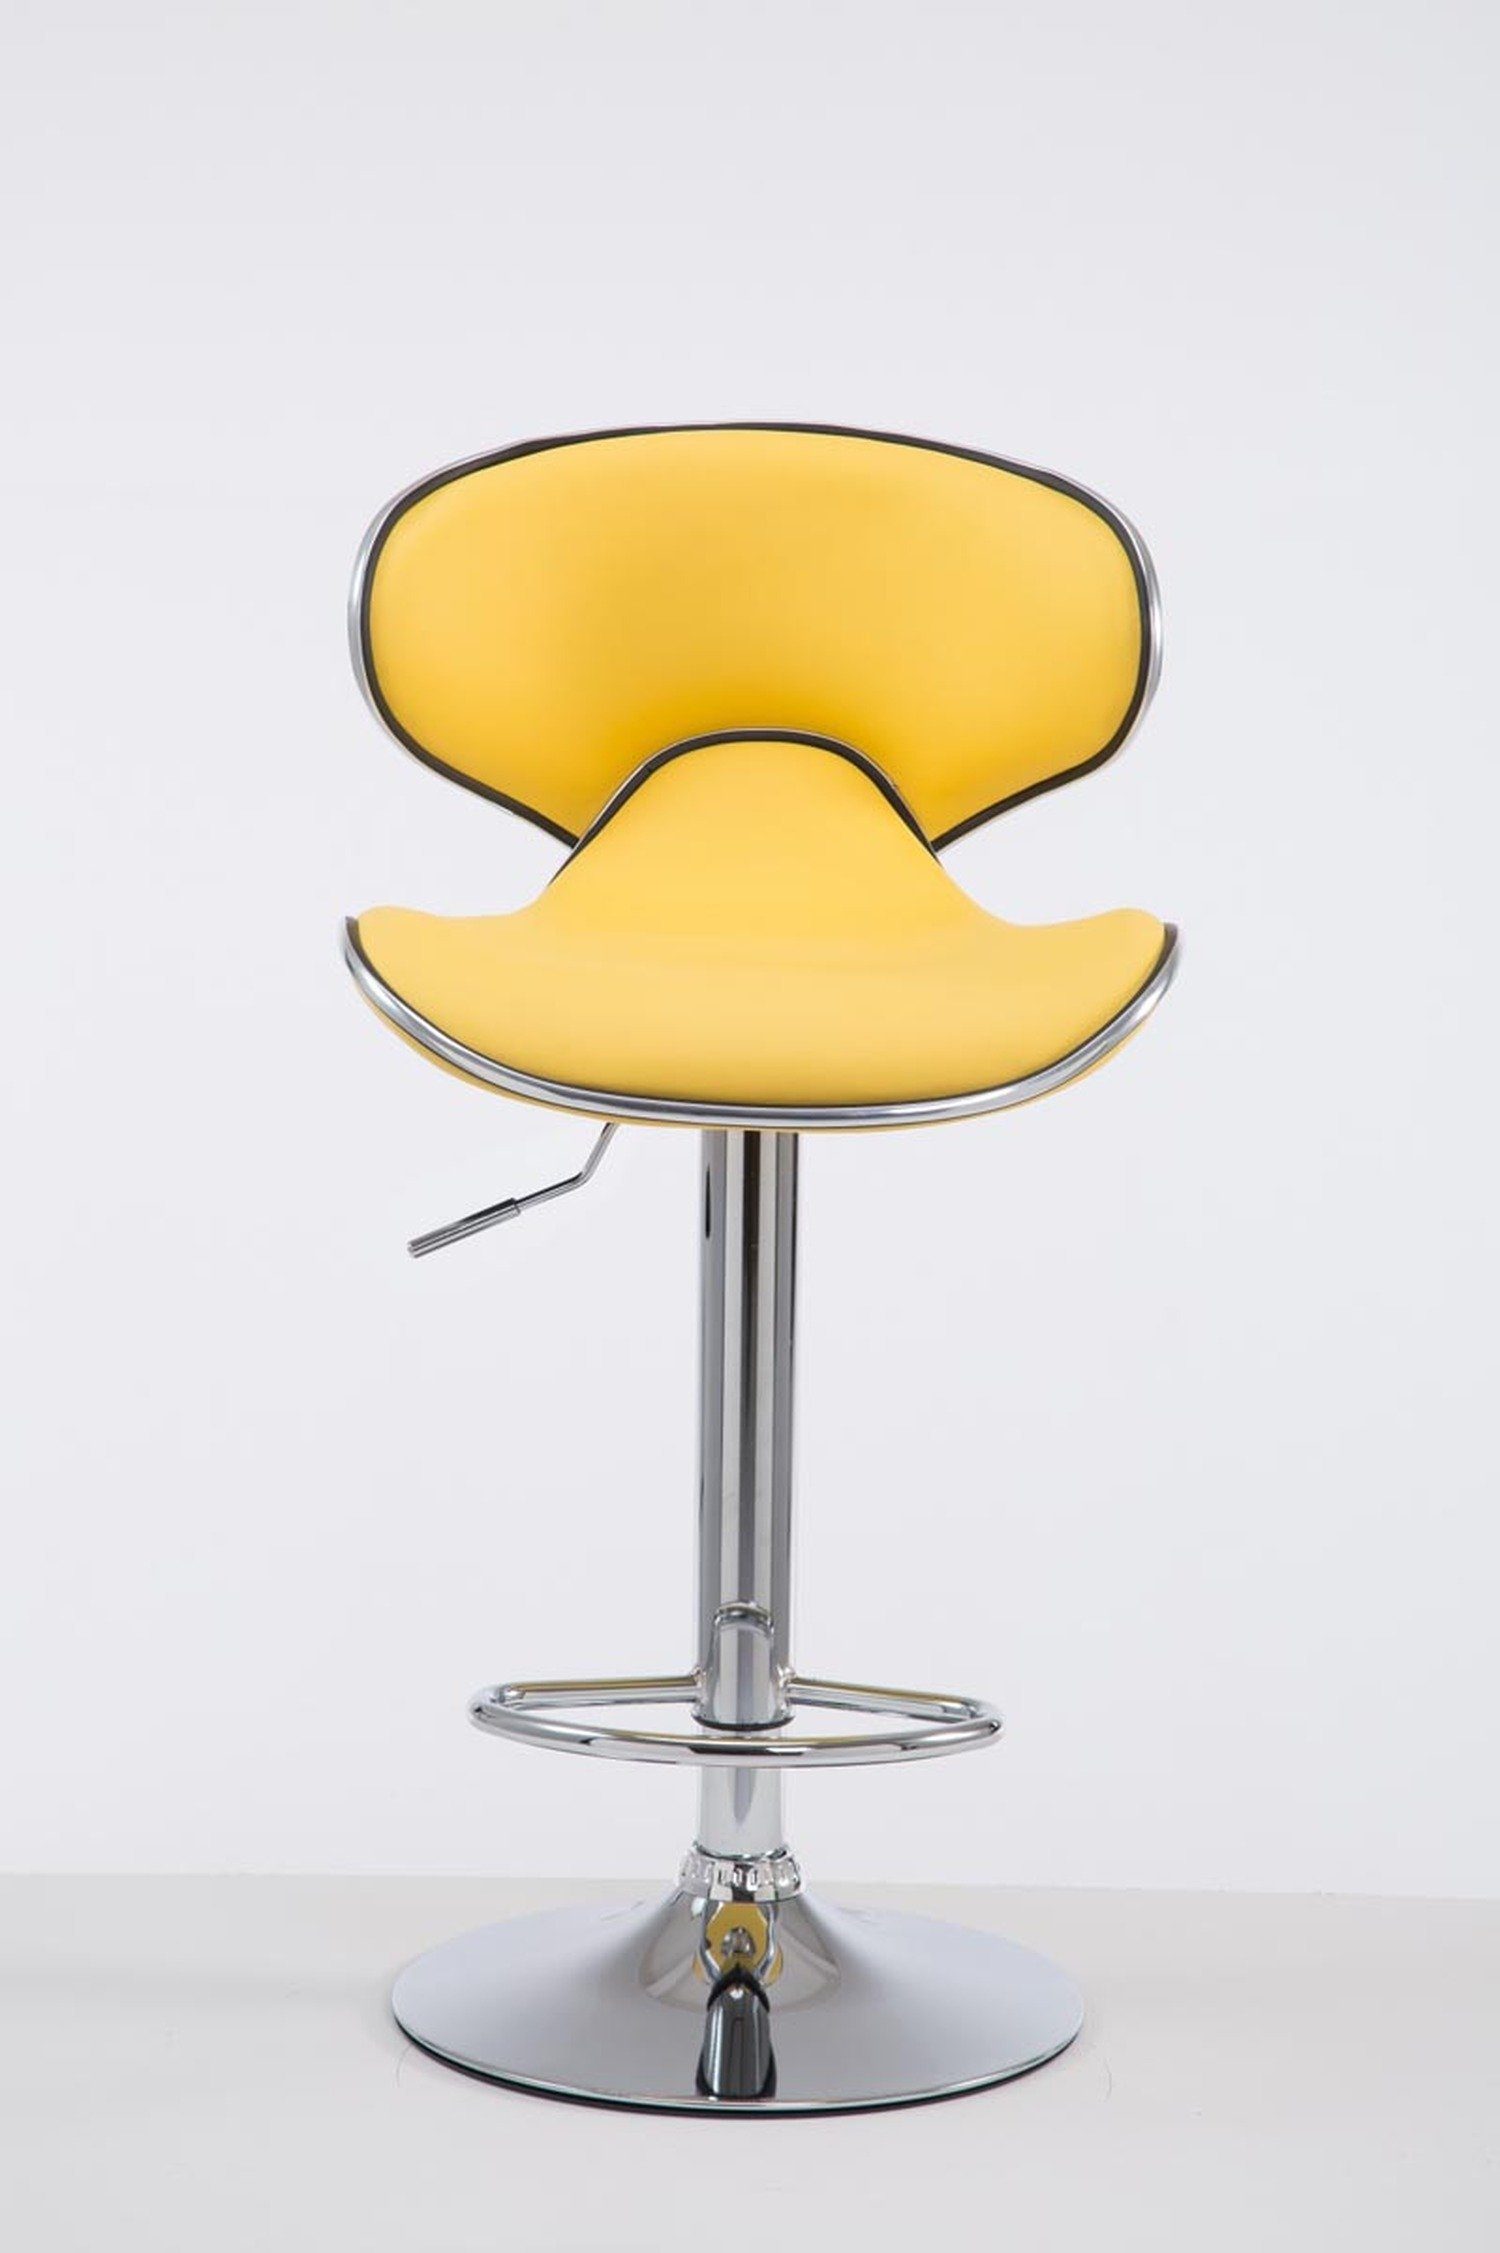 Sitzfläche: - chrom Kunstleder höhenverstellbar Küche), Las-Palmas Rückenlehne TPFLiving Gelb für - - Theke Barhocker hoher Hocker - 360° drehbar Metall & Gestell: (mit